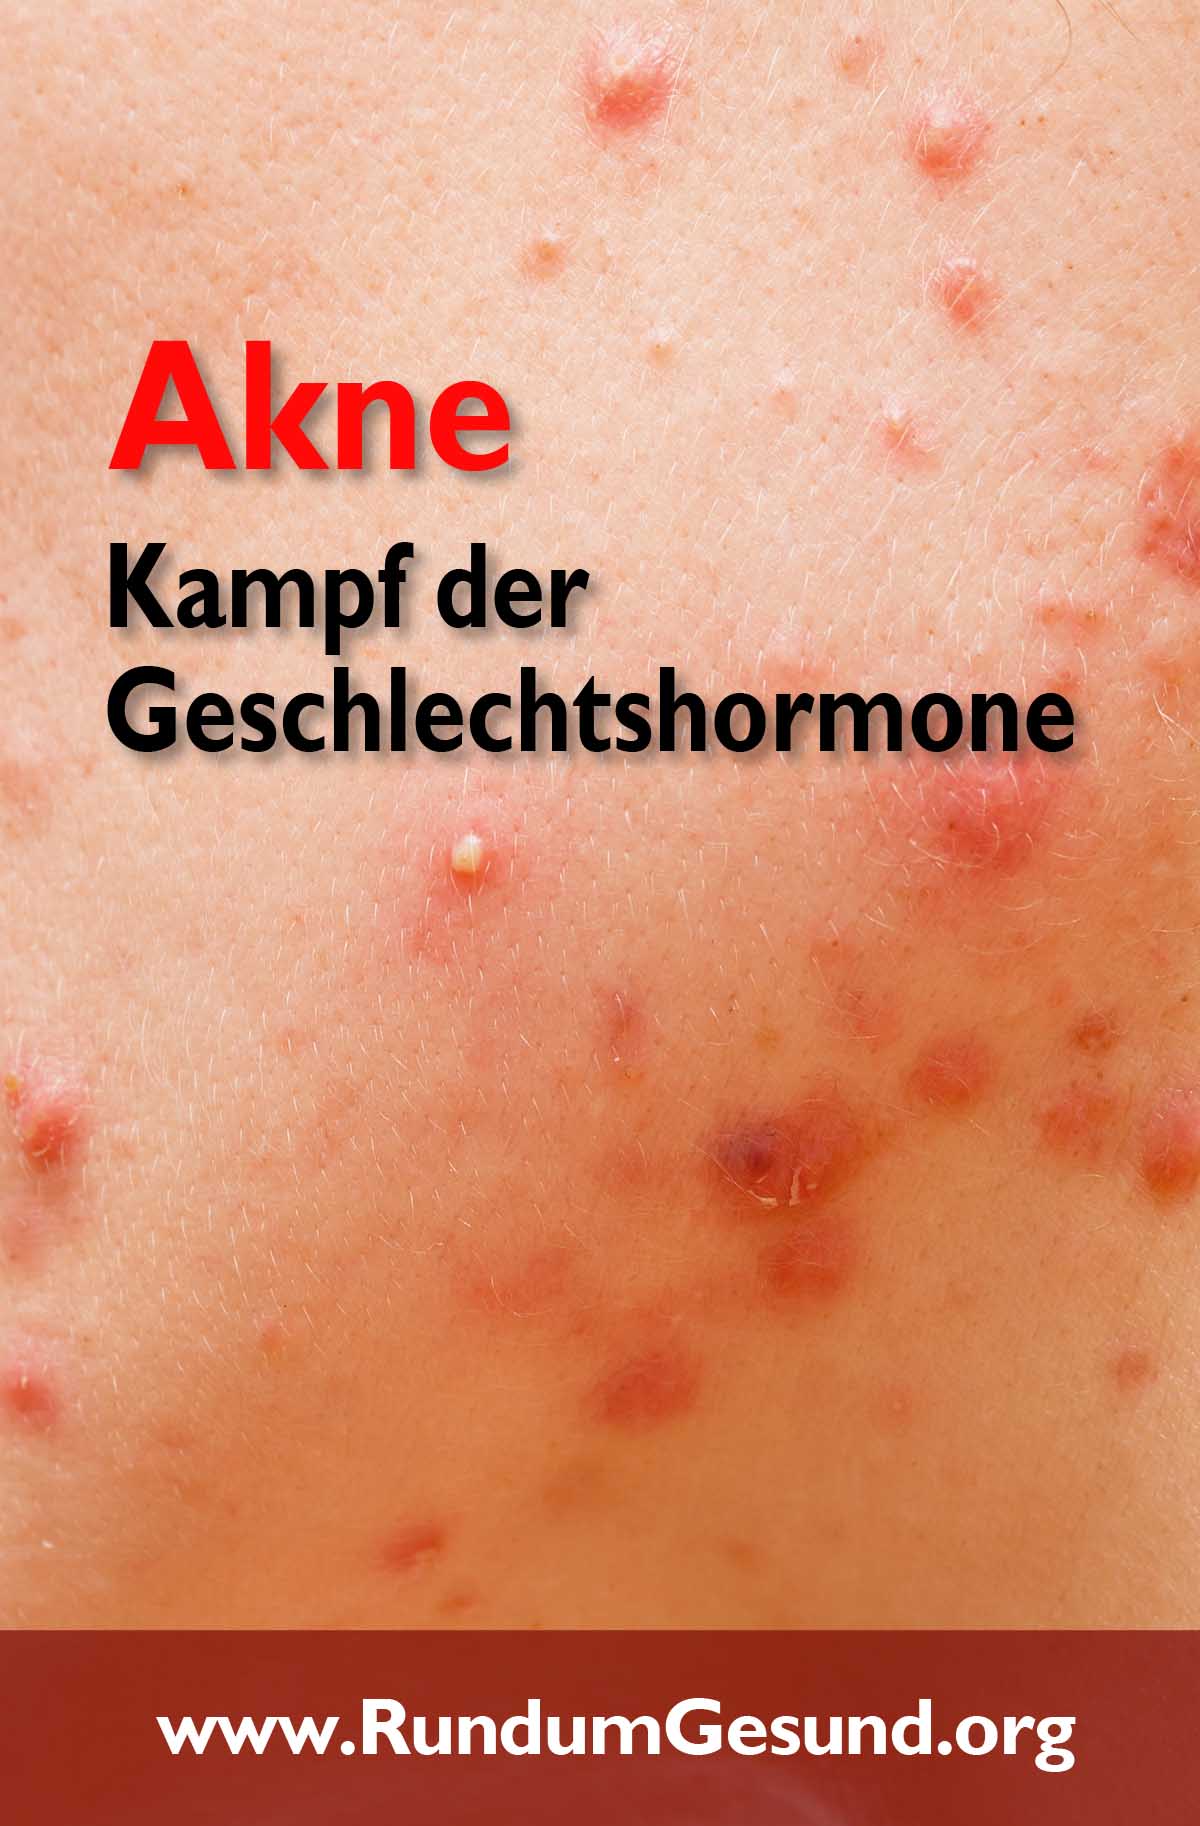 Akne - Kampf der Geschlechtshormone